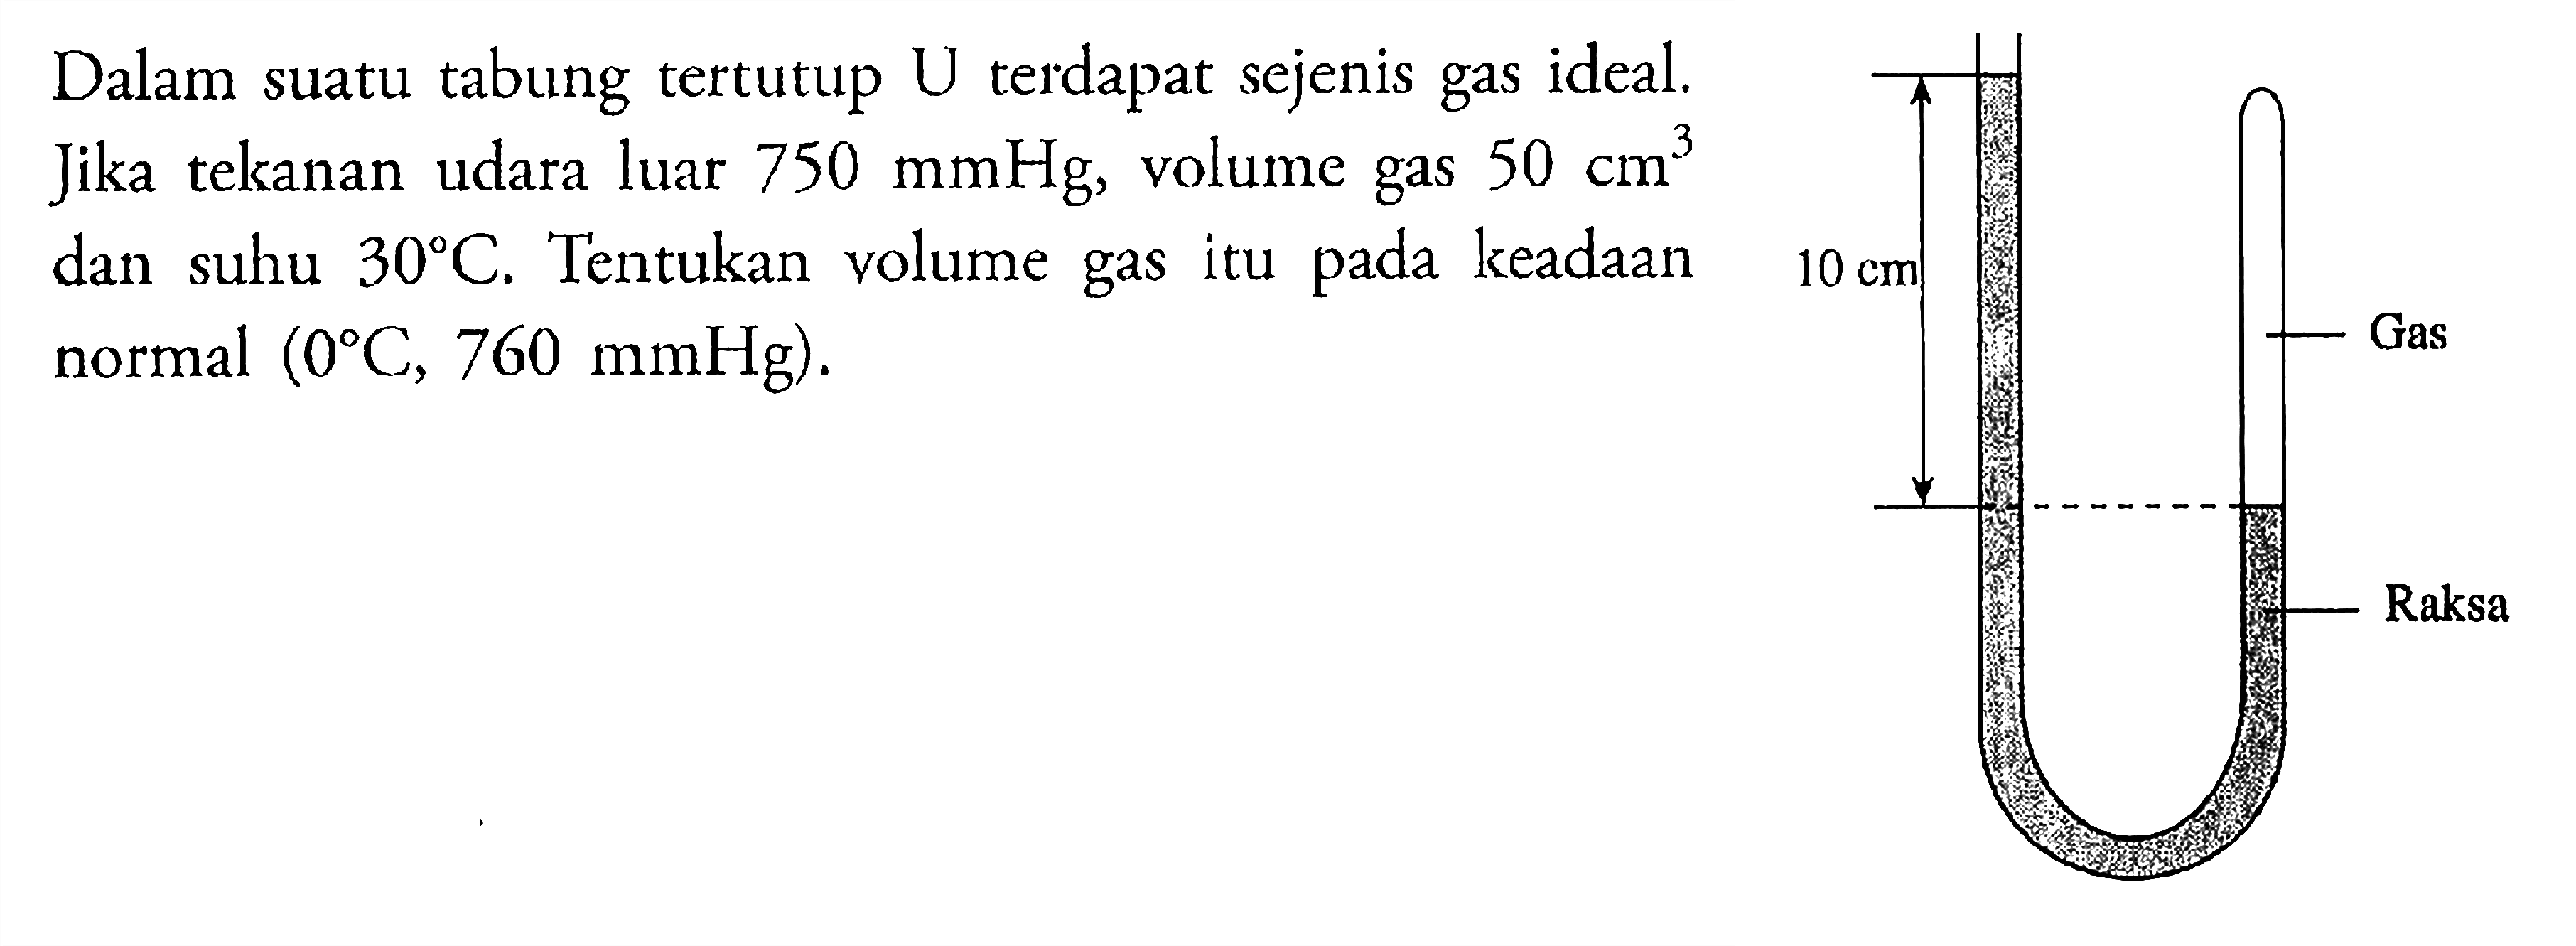 Dalam suatu tabung tertutup U terdapat sejenis gas ideal. Jika tekanan udara luar 750 mmHg, volume gas 50 cm^3 dan suhu 30 C. Tentukan volume gas itu pada keadaan normal  (0 C, 760 mmHg) 10 cm Gas Raksa 